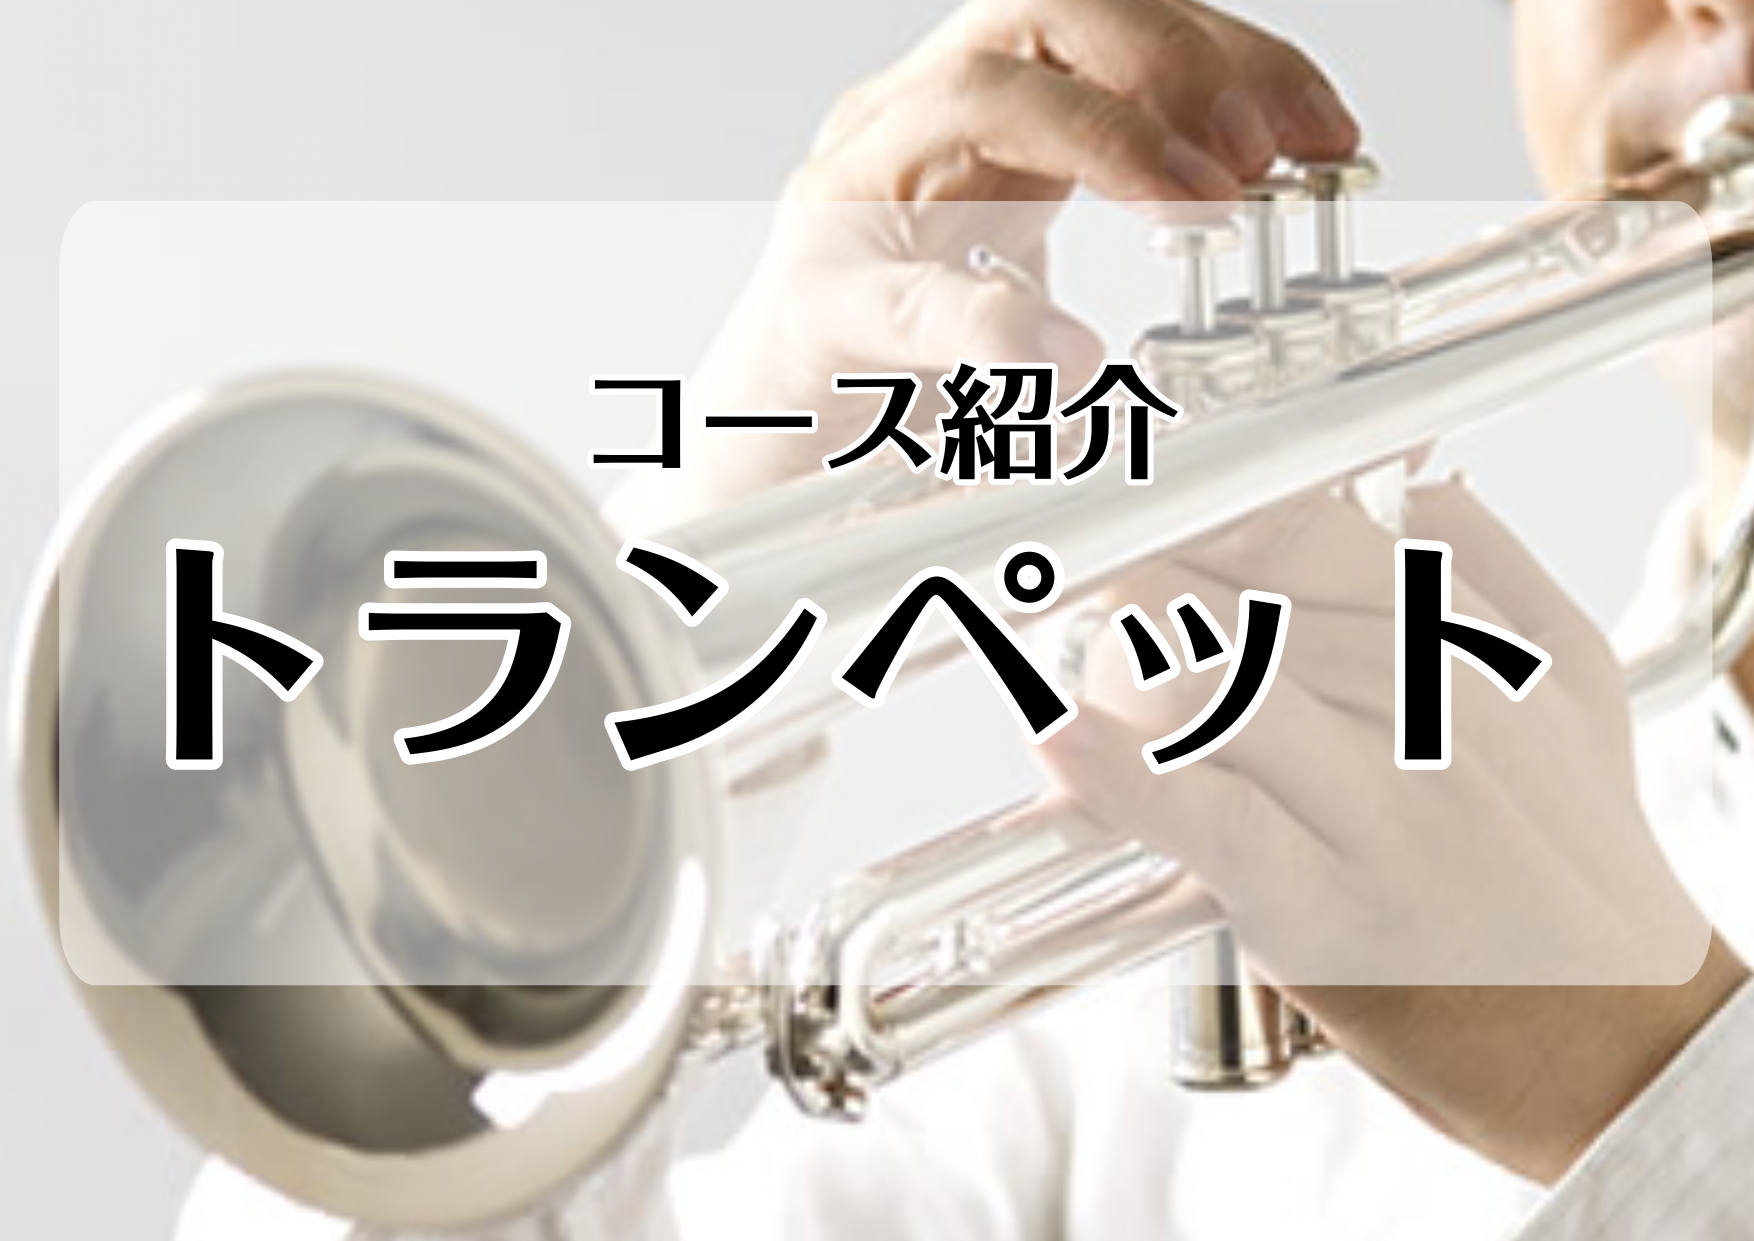 *[http://www.shimamura.co.jp/lesson/course/trumpet/L:title=トランペットコース] 　 金管楽器の花形・トランペット。発祥は軍隊のファンファーレ。]]他の楽器にはない、華々しく輝かしい高音で私達を魅了します。]]その音色はあるときは哀愁を漂わせ […]